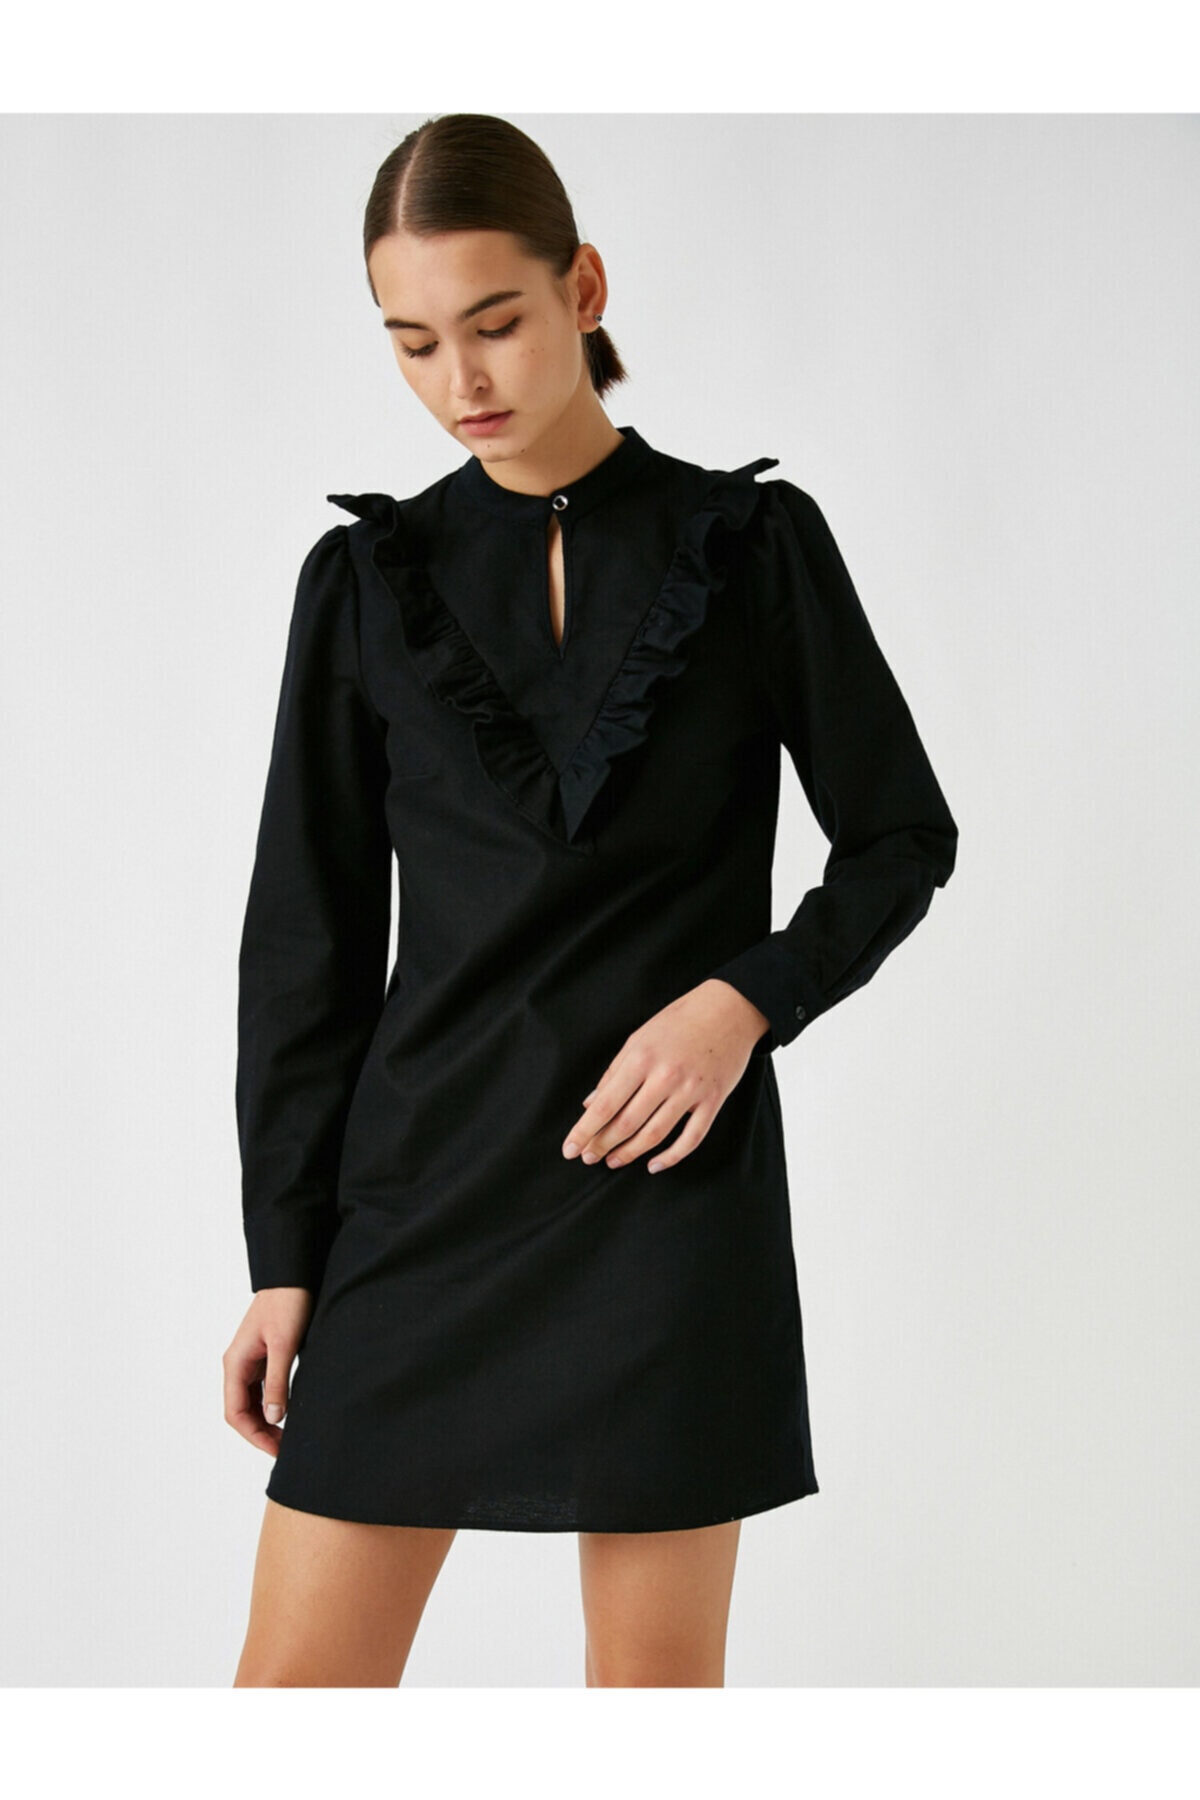 Levně Koton Dámské černé 100% bavlna s dlouhým rukávem knoflík u krku volán šaty